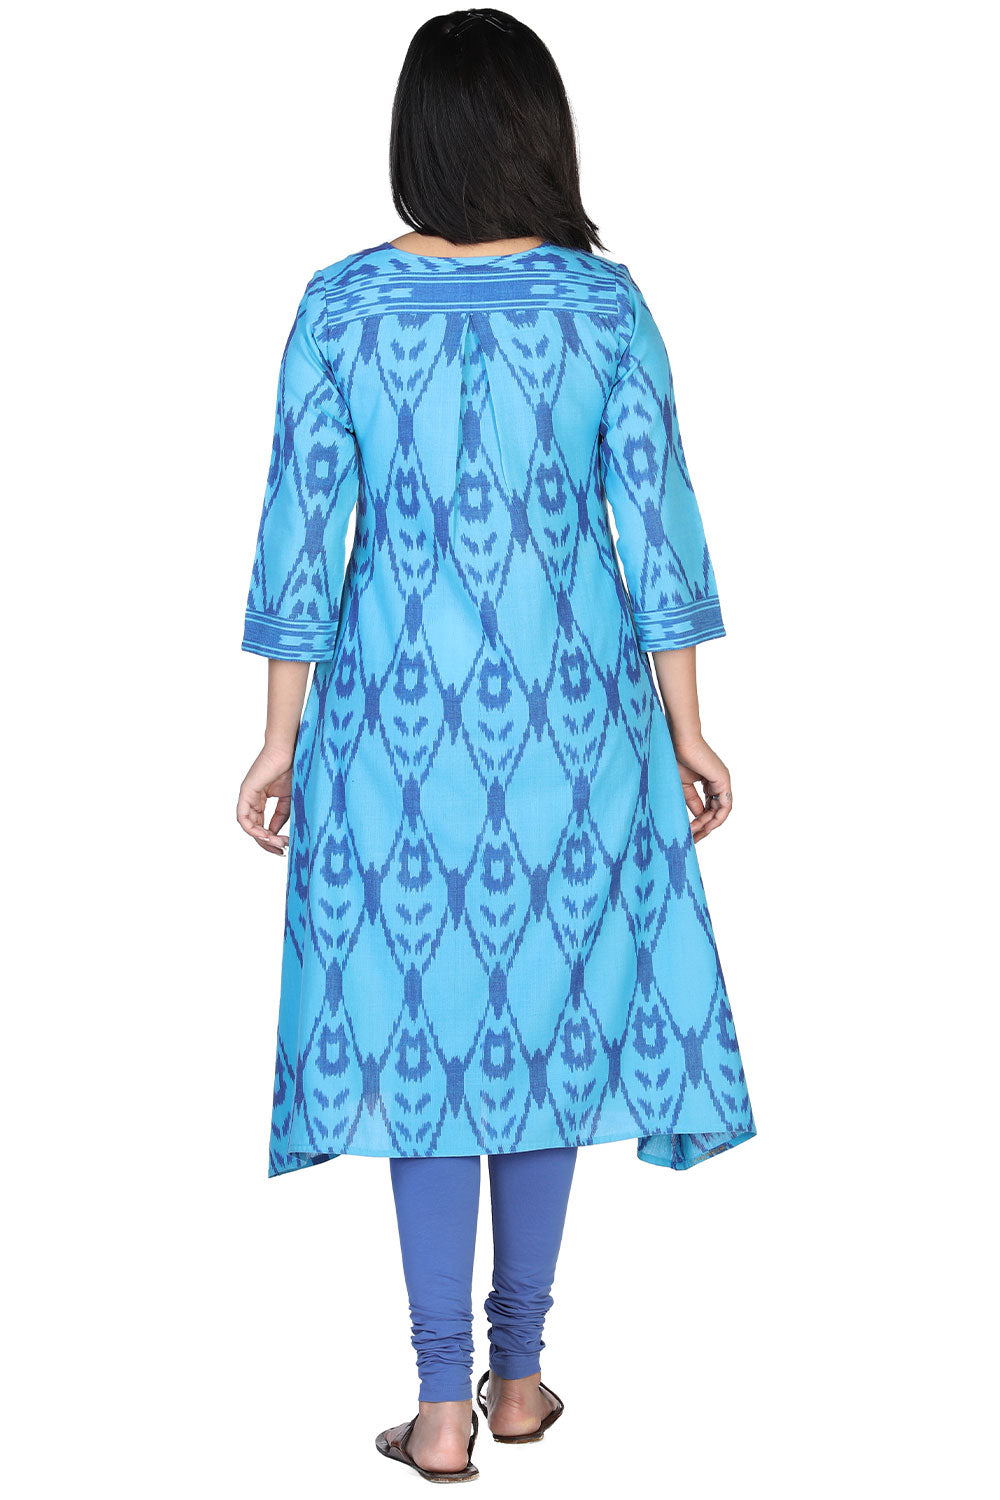 Turquoise blue cotton ikkat kurti